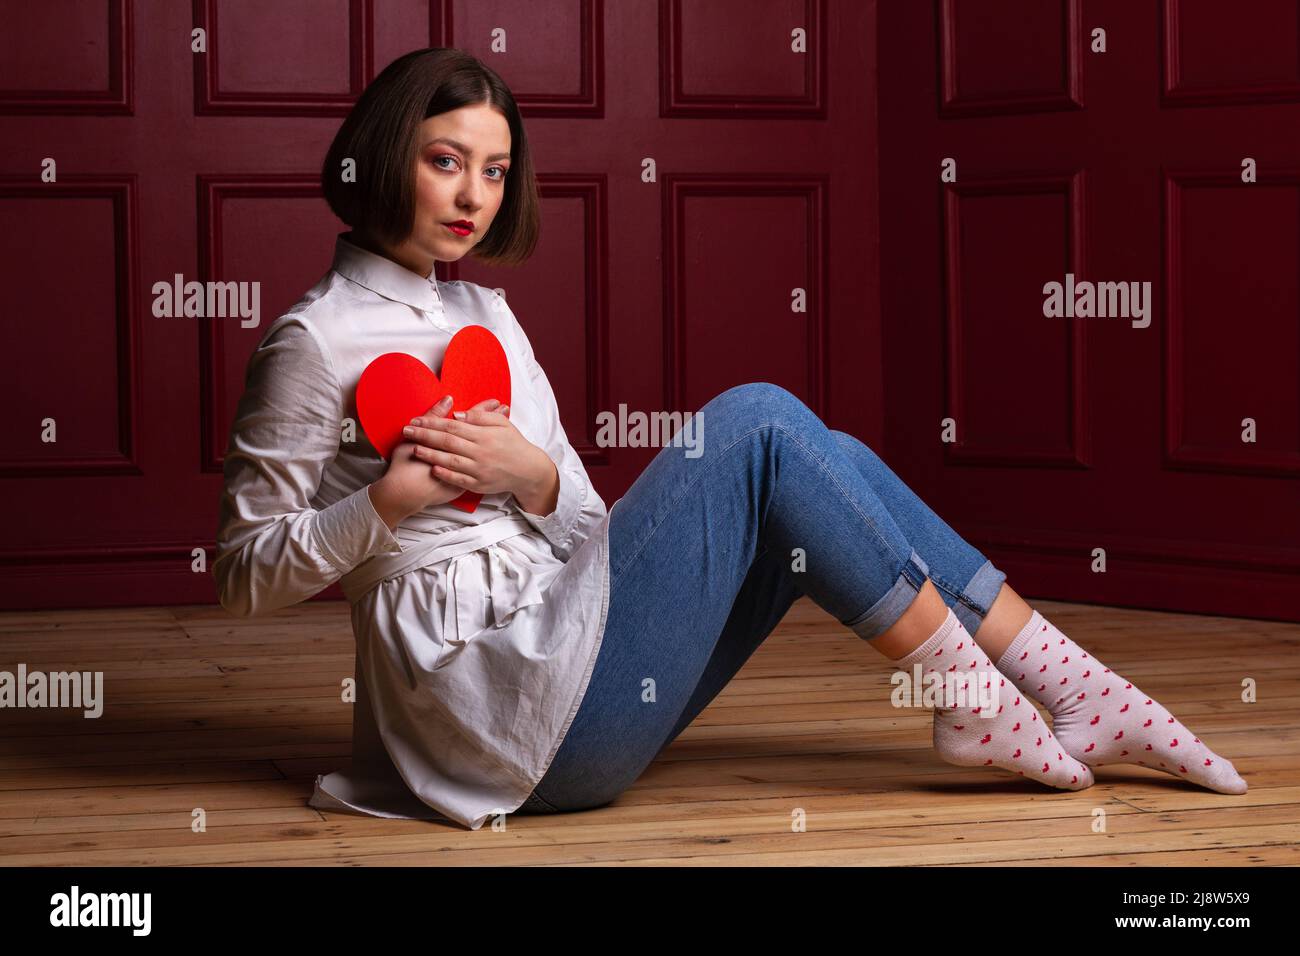 Femme aux cheveux courts assise à côté de l'appareil photo sur un sol en bois et un arrière-plan rouge tenant la forme du cœur rouge sur la poitrine Banque D'Images